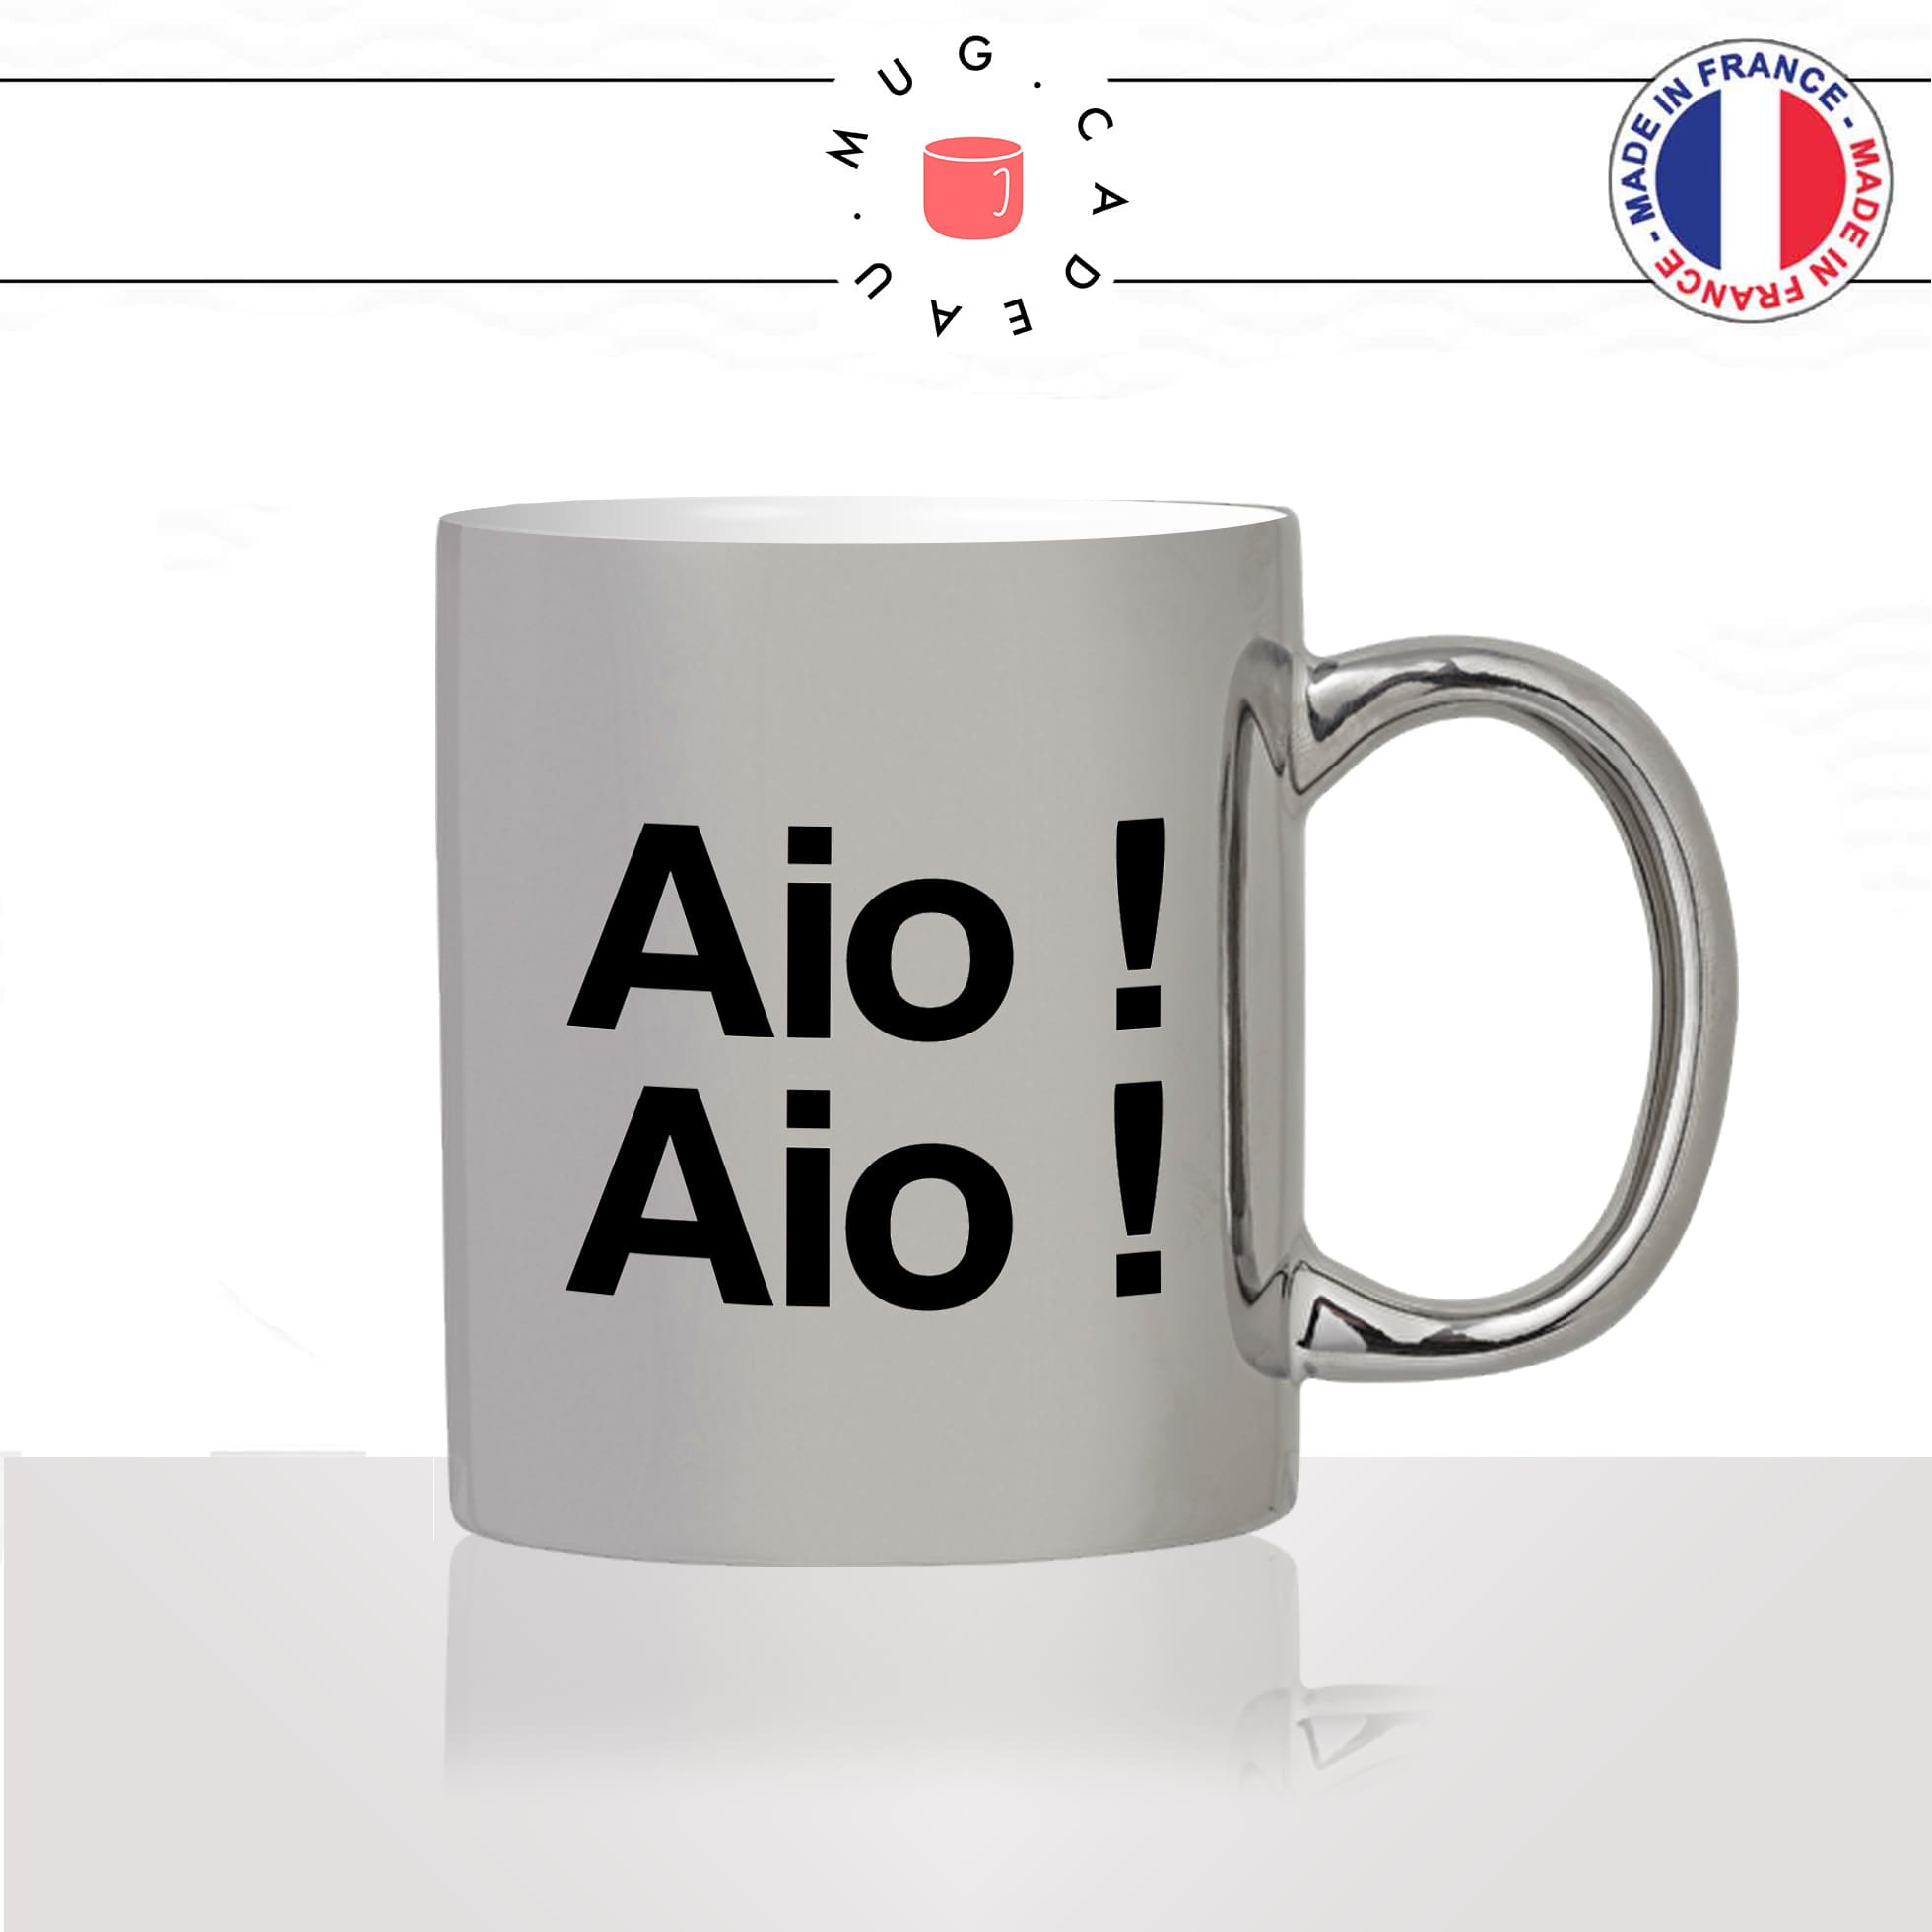 mug-tasse-argent-argenté-silver-aio-aio-corse-corsica-patois-langue-ile-de-beauté-france-francais-idée-cadeau-fun-cool-café-thé2